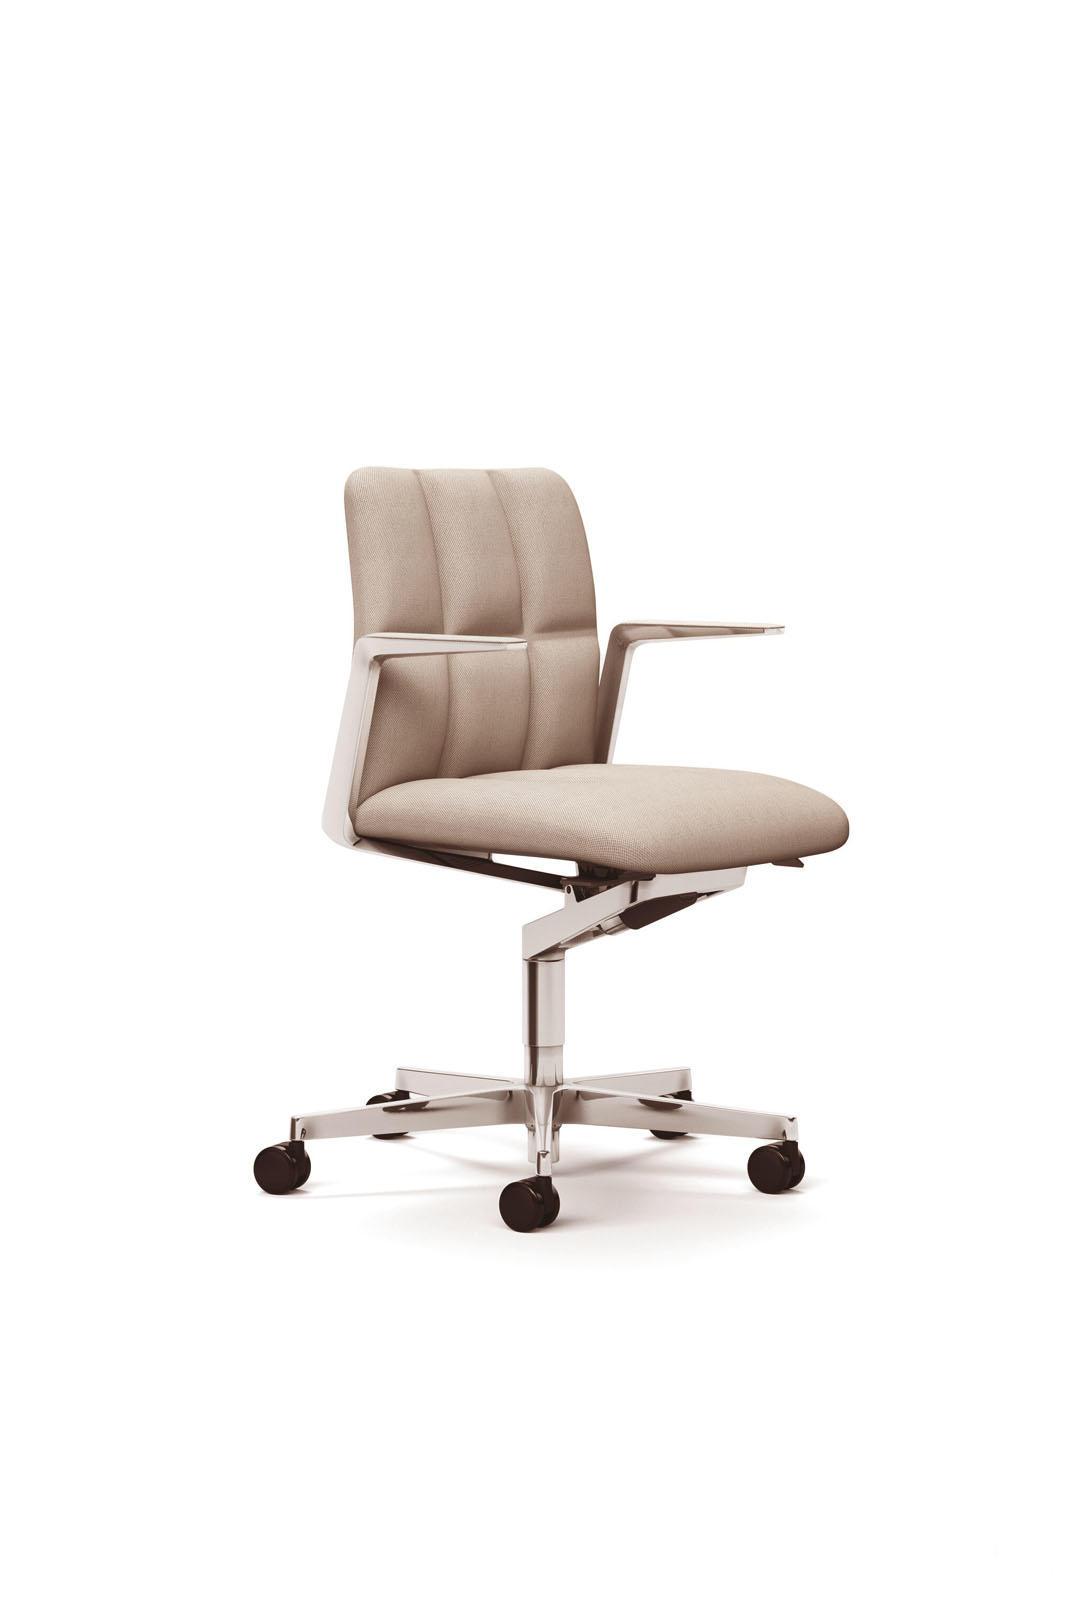 Офисное кресло Leadchair Management Soft 2075 от Walter Knoll — Фотография 1